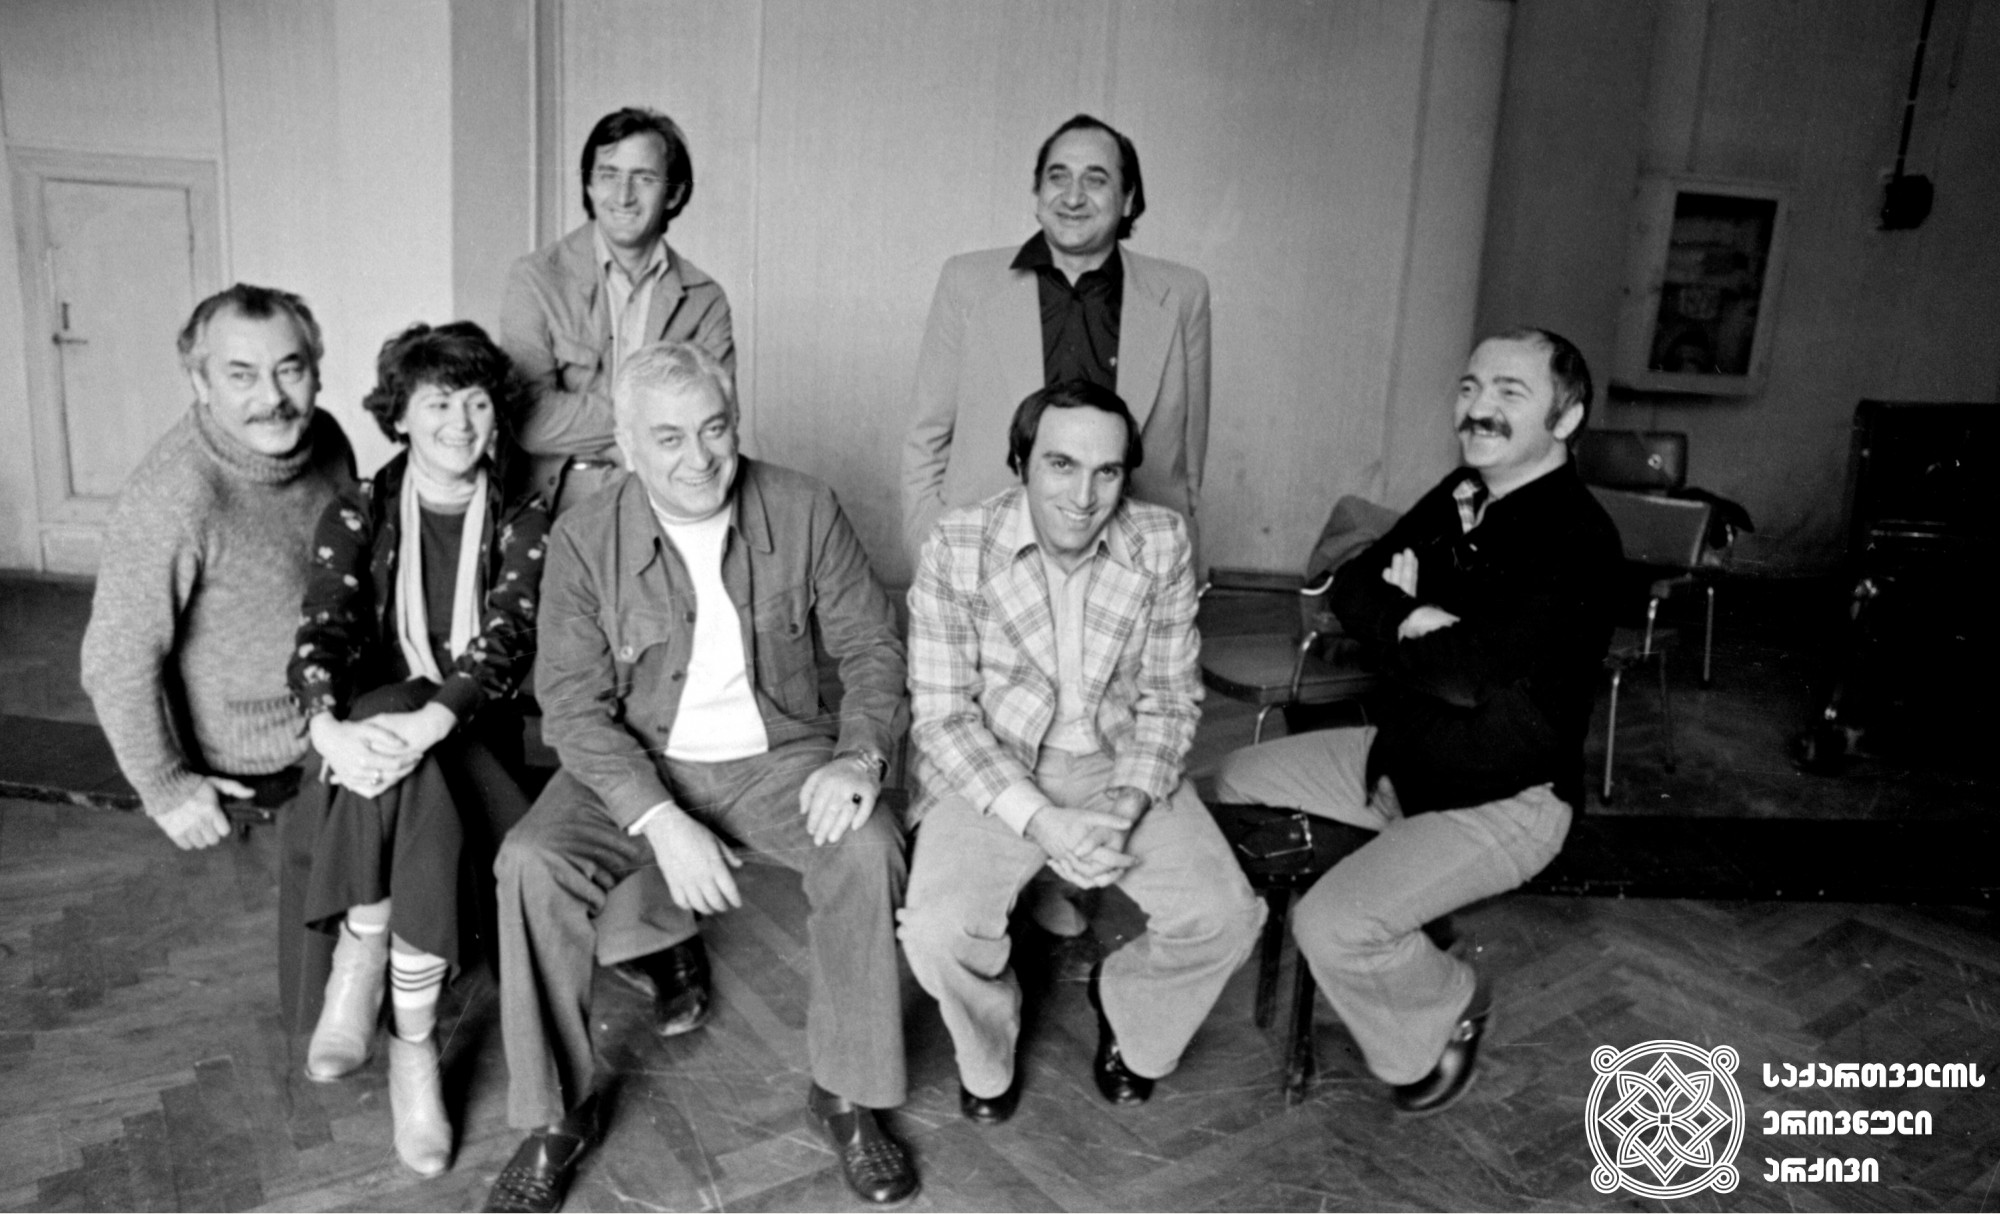 შოთა რუსთაველის  სახელმწიფო აკადემიური თეატრის  შემოქმედებითი  ჯგუფი, მარცხნიდან: გურამ საღარაძე,  იზა გიგოშვილი, გოგი ალექსი-მესხიშვილი, ჯემალ ღაღანიძე, რამაზ ჩხიკვაძე, ჟანრი ლოლაშვილი და რობერტ სტურუა. <br>
24 მარტი, 1980 წელი. <br>

The Rustaveli Theatre Company, from left to right: Guram Sagharadze, Iza Gigoshvili, Gogi Aleksi-Meskhishvili, Jemal Gaganidze, Ramaz Chkhikvadze, Janri Lolashvili and Robert Sturua. <br> March 24, 1980.